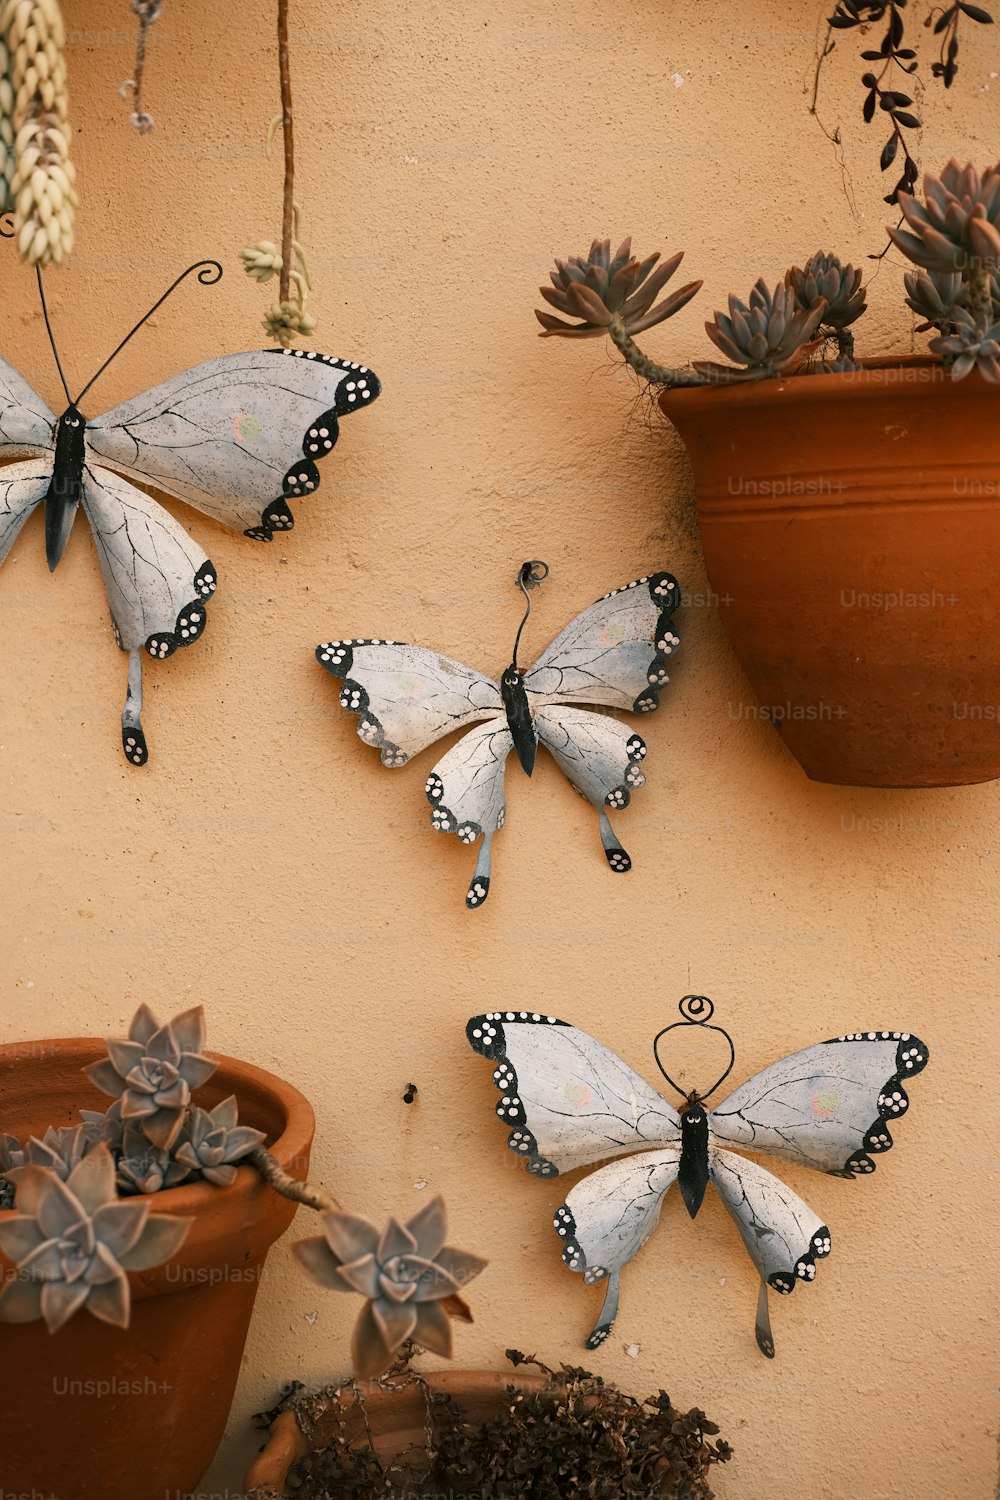 Drei Schmetterlinge hängen an einer Wand neben einer Topfpflanze